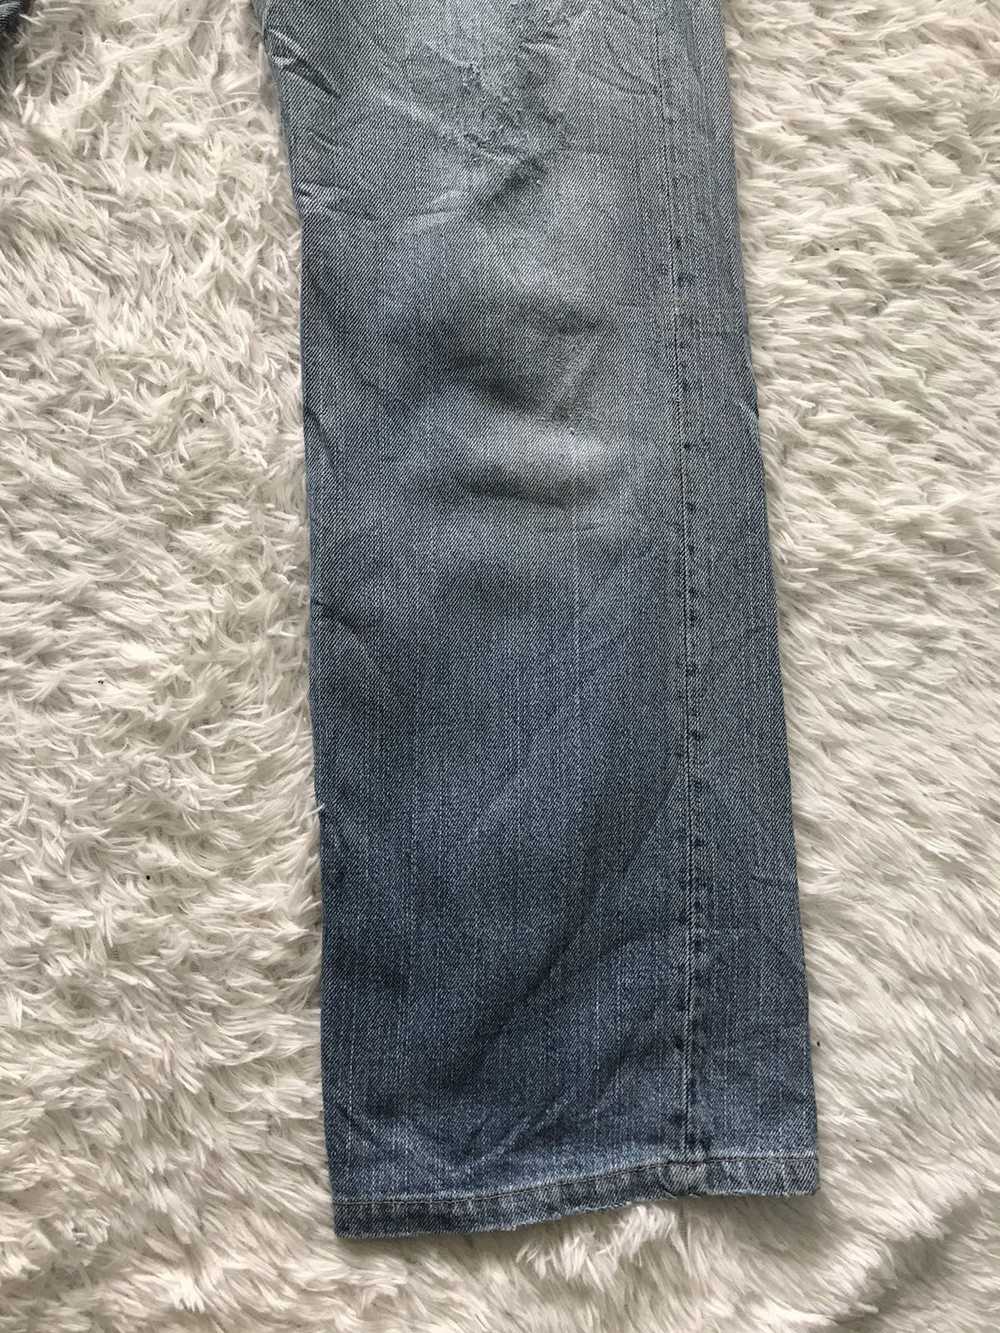 45rpm - Distress R 45 Rpm Denim Jeans Pant - image 4